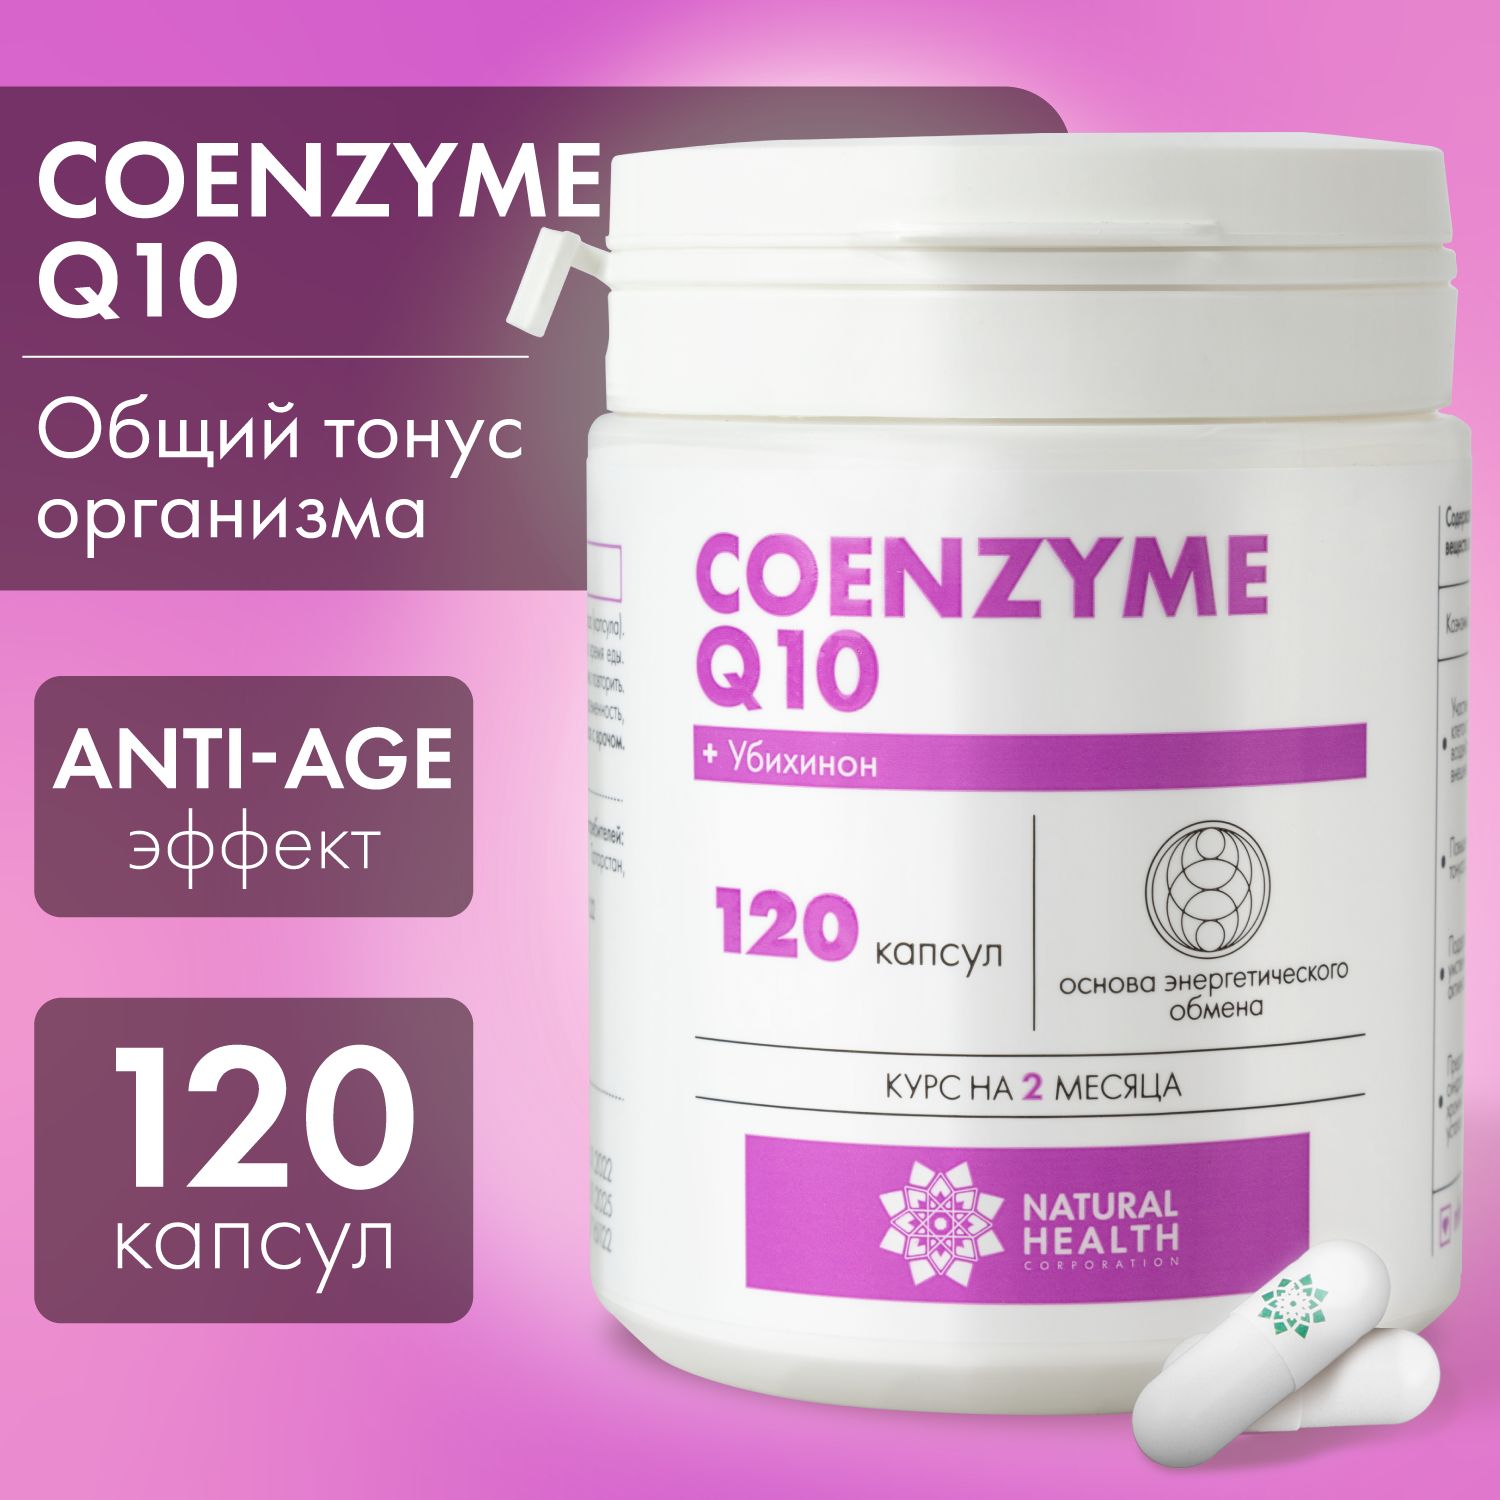 КоэнзимQ10,витаминыдляженщин,мужчин,бады,длясинтезаАТФ,дляимунитета,120капсул,массакапсулы300мг.